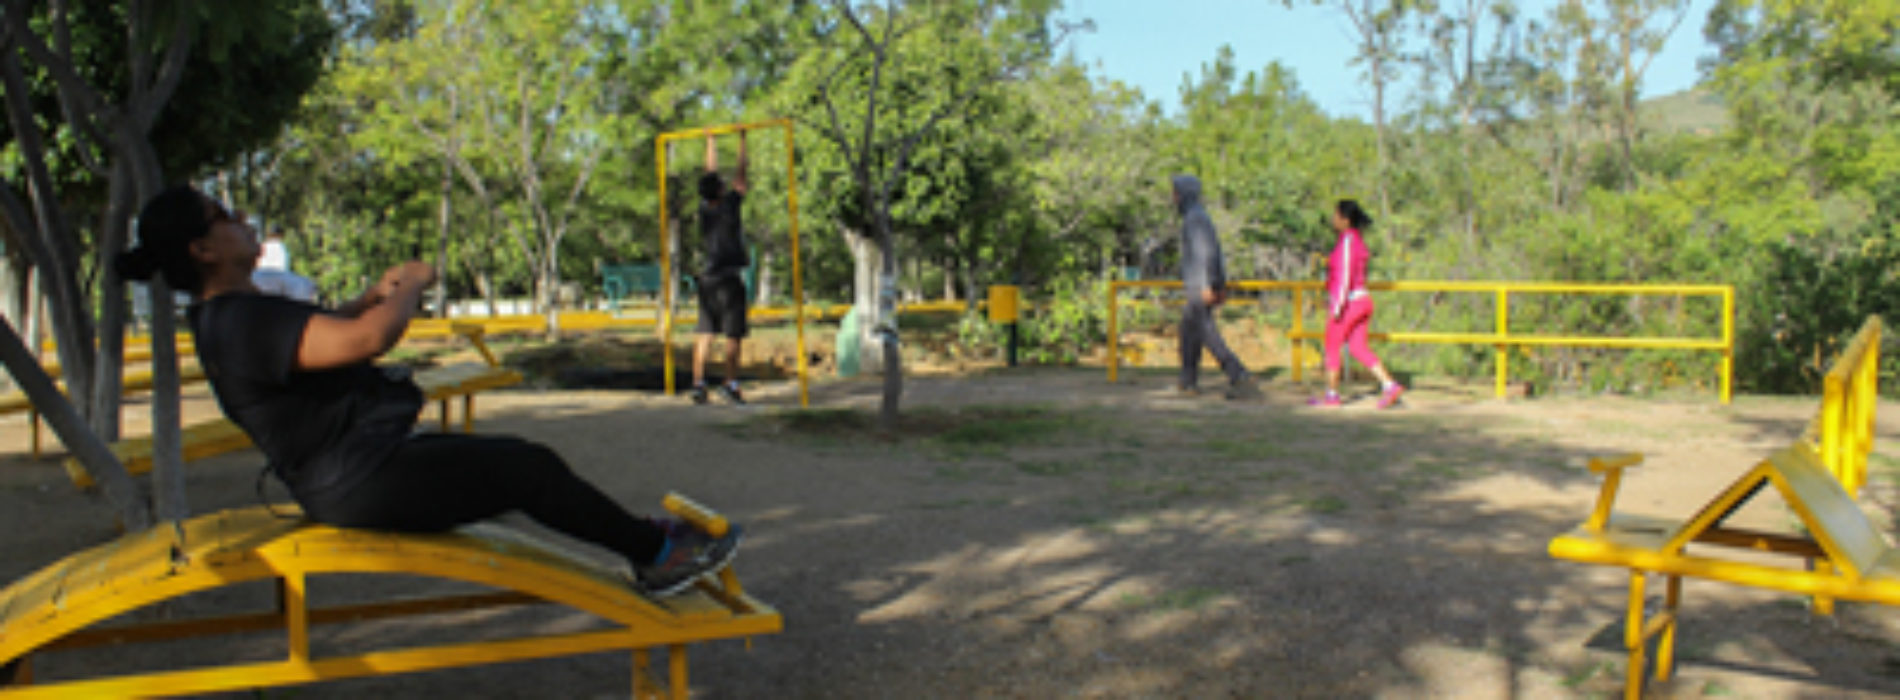 Parque “Luis Donaldo Colosio”,  opción para esparcimiento familiar al aire libre